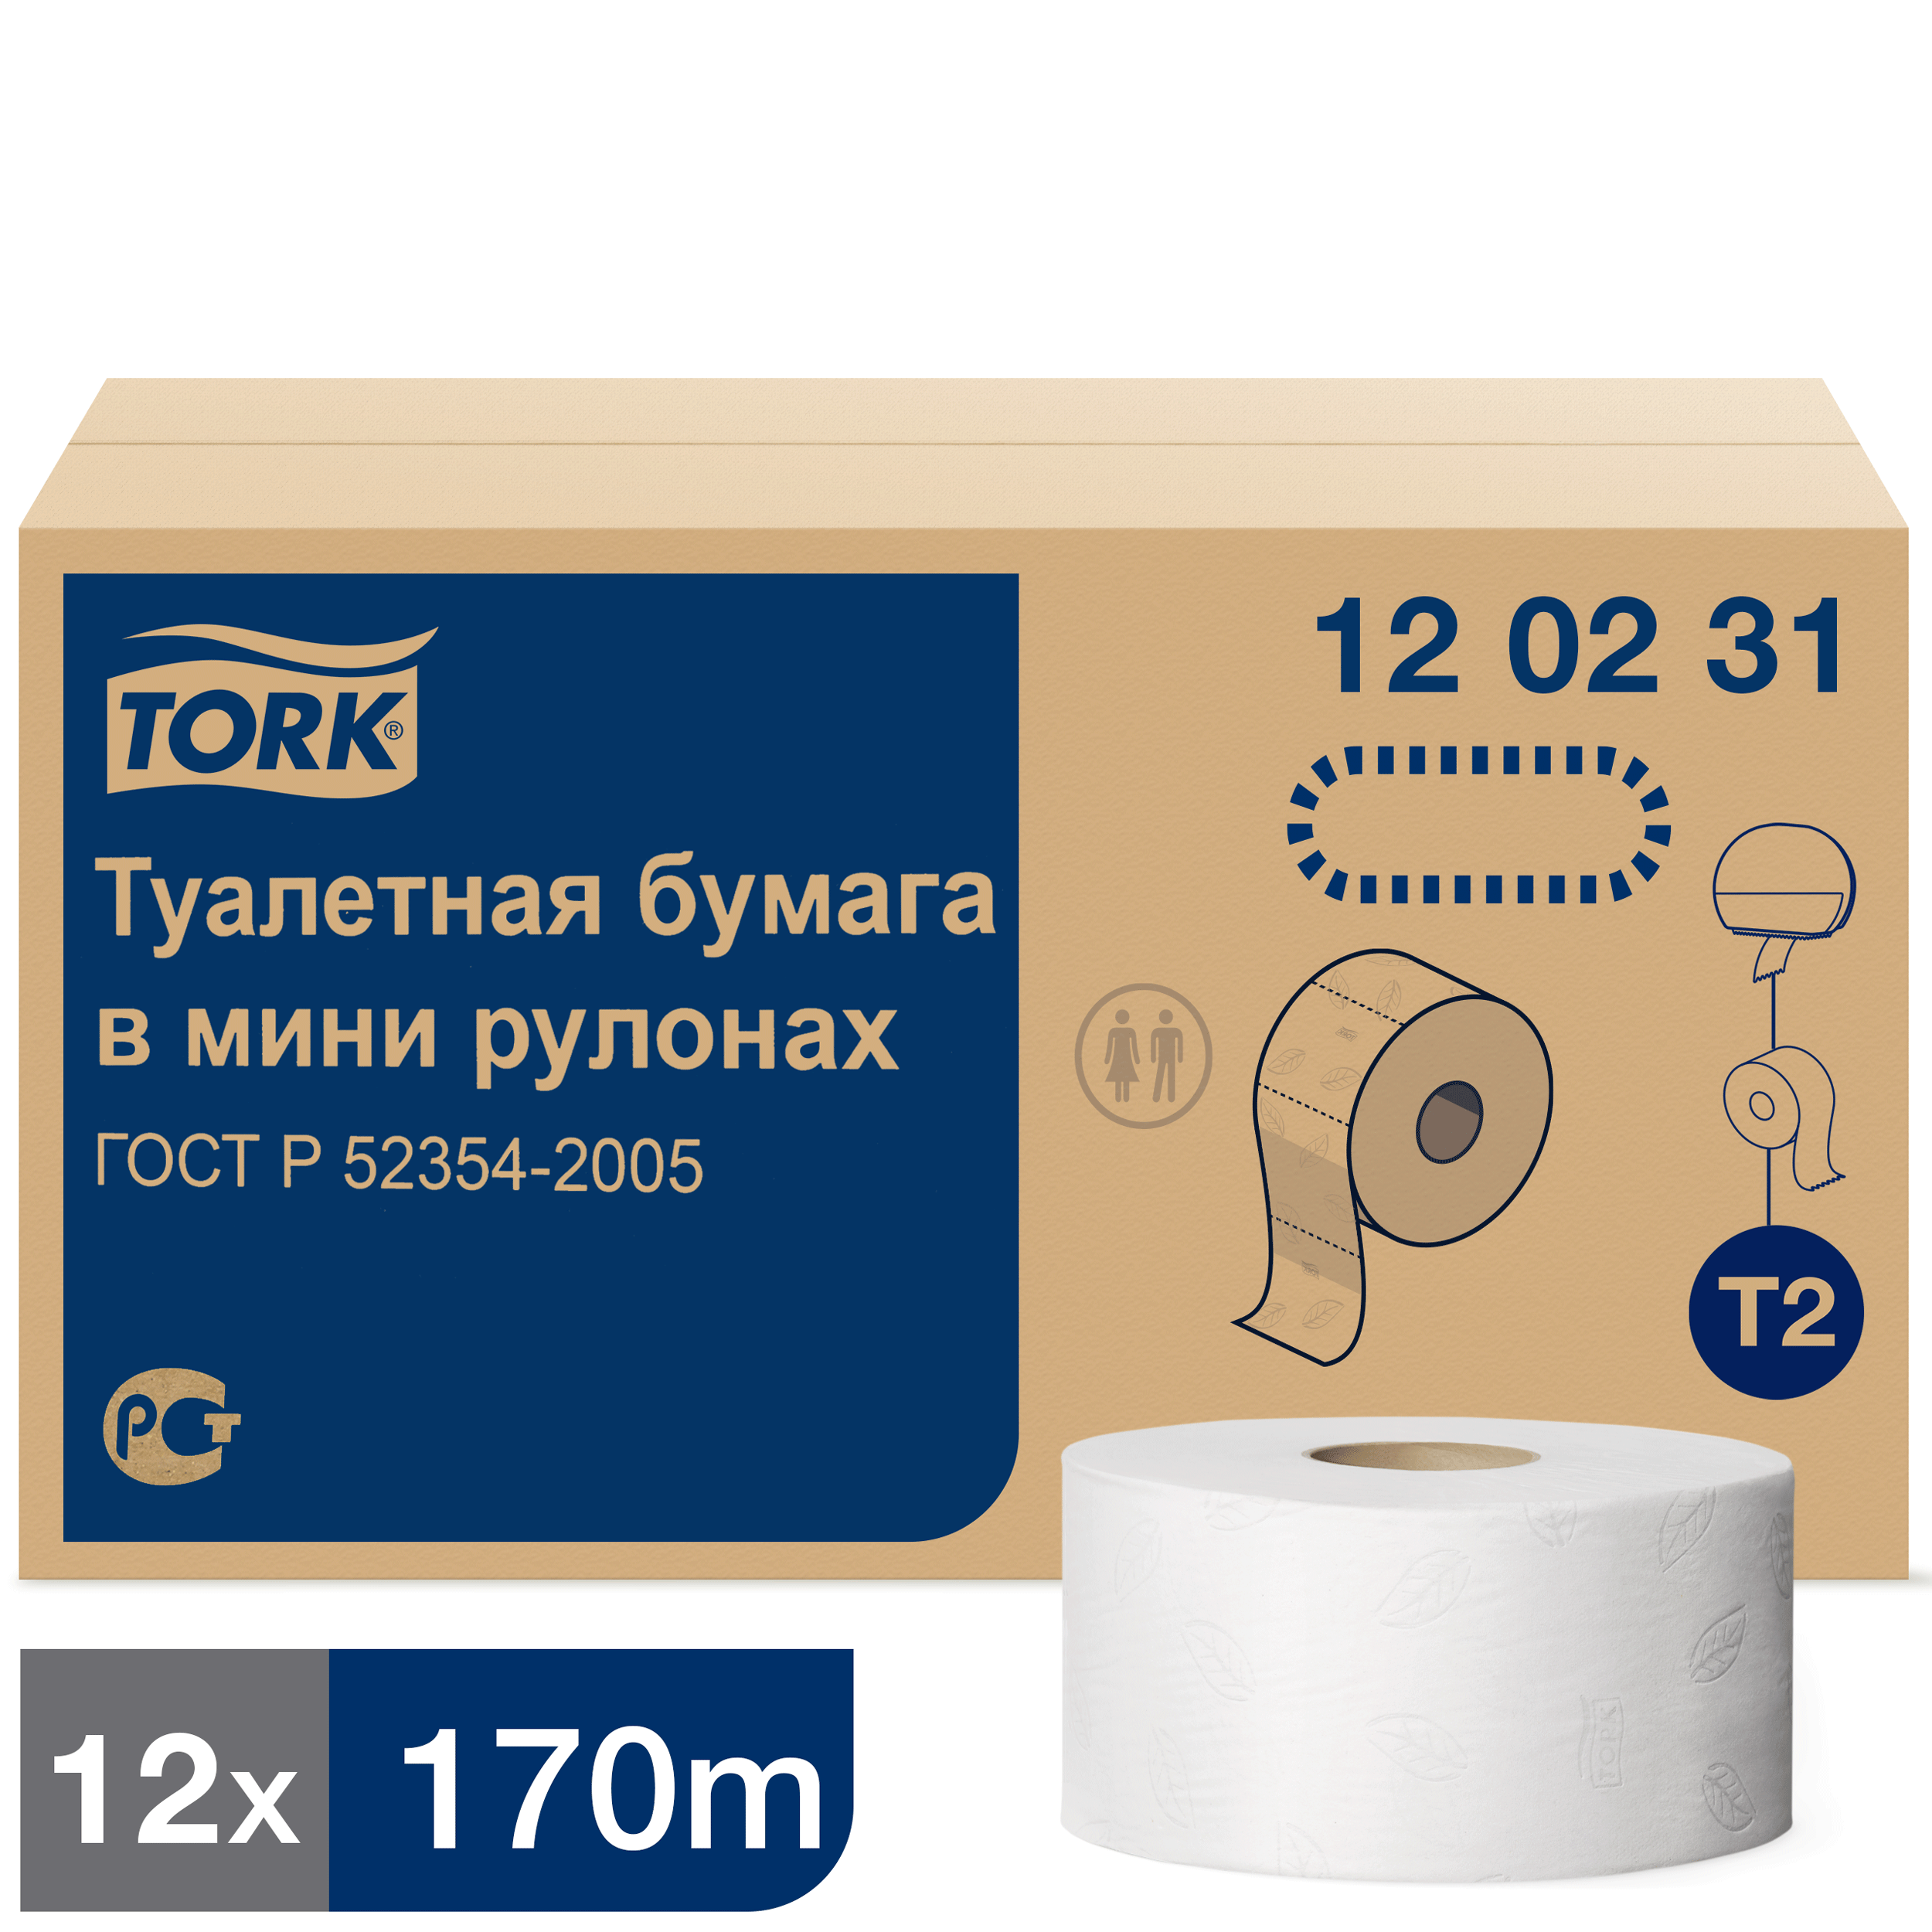 Туалетная бумага Tork Advanced в мини рулонах, T2, 2 сл, 170мХ9,5см, белая, 12 шт туалетная бумага в мини рулонах tork advanced smartone